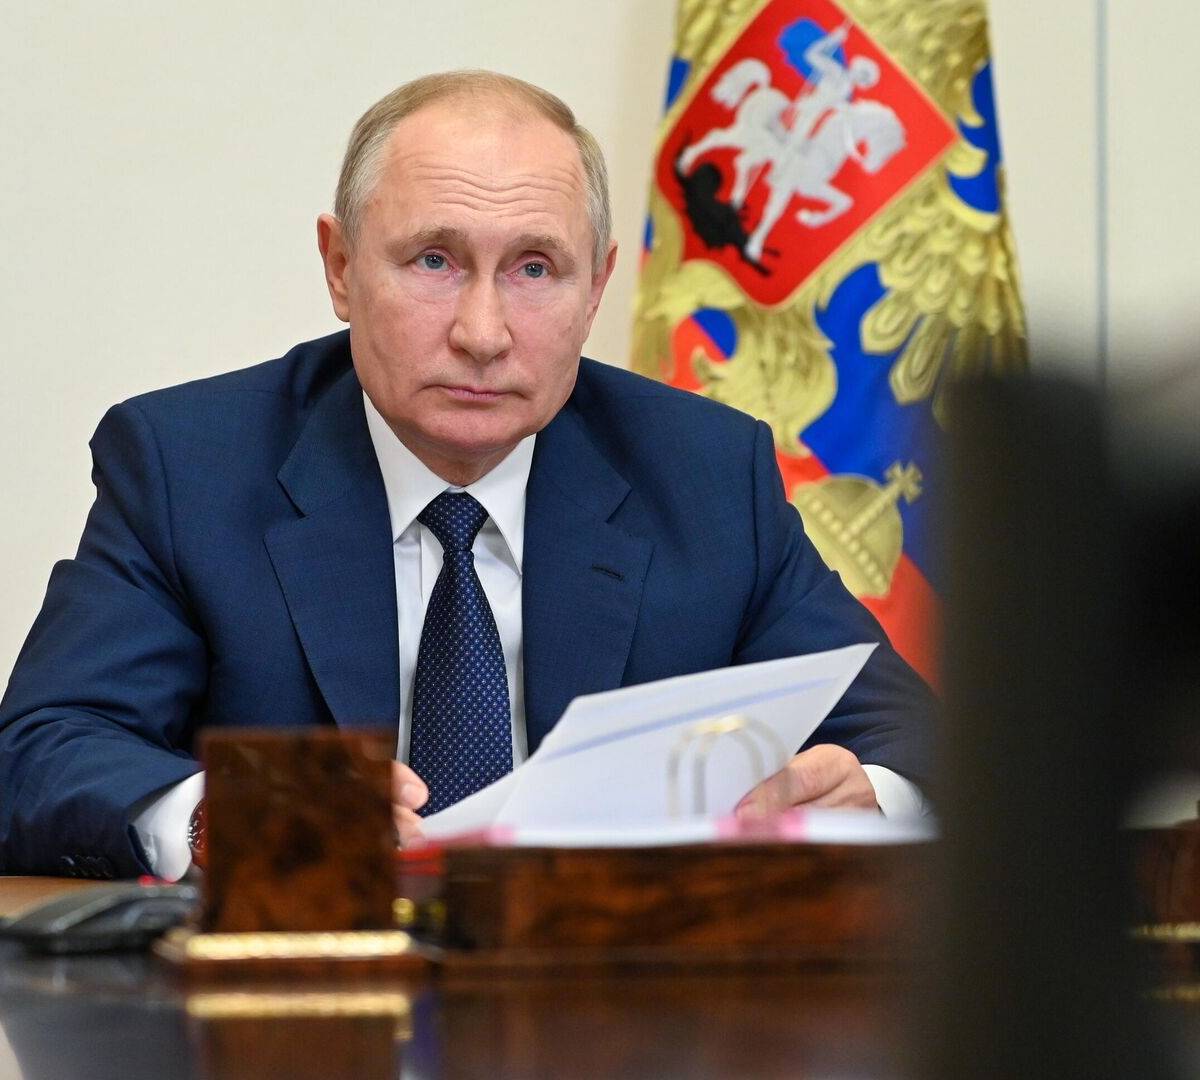 Консолидация вокруг лидера: эксперты о политических итогах года в России